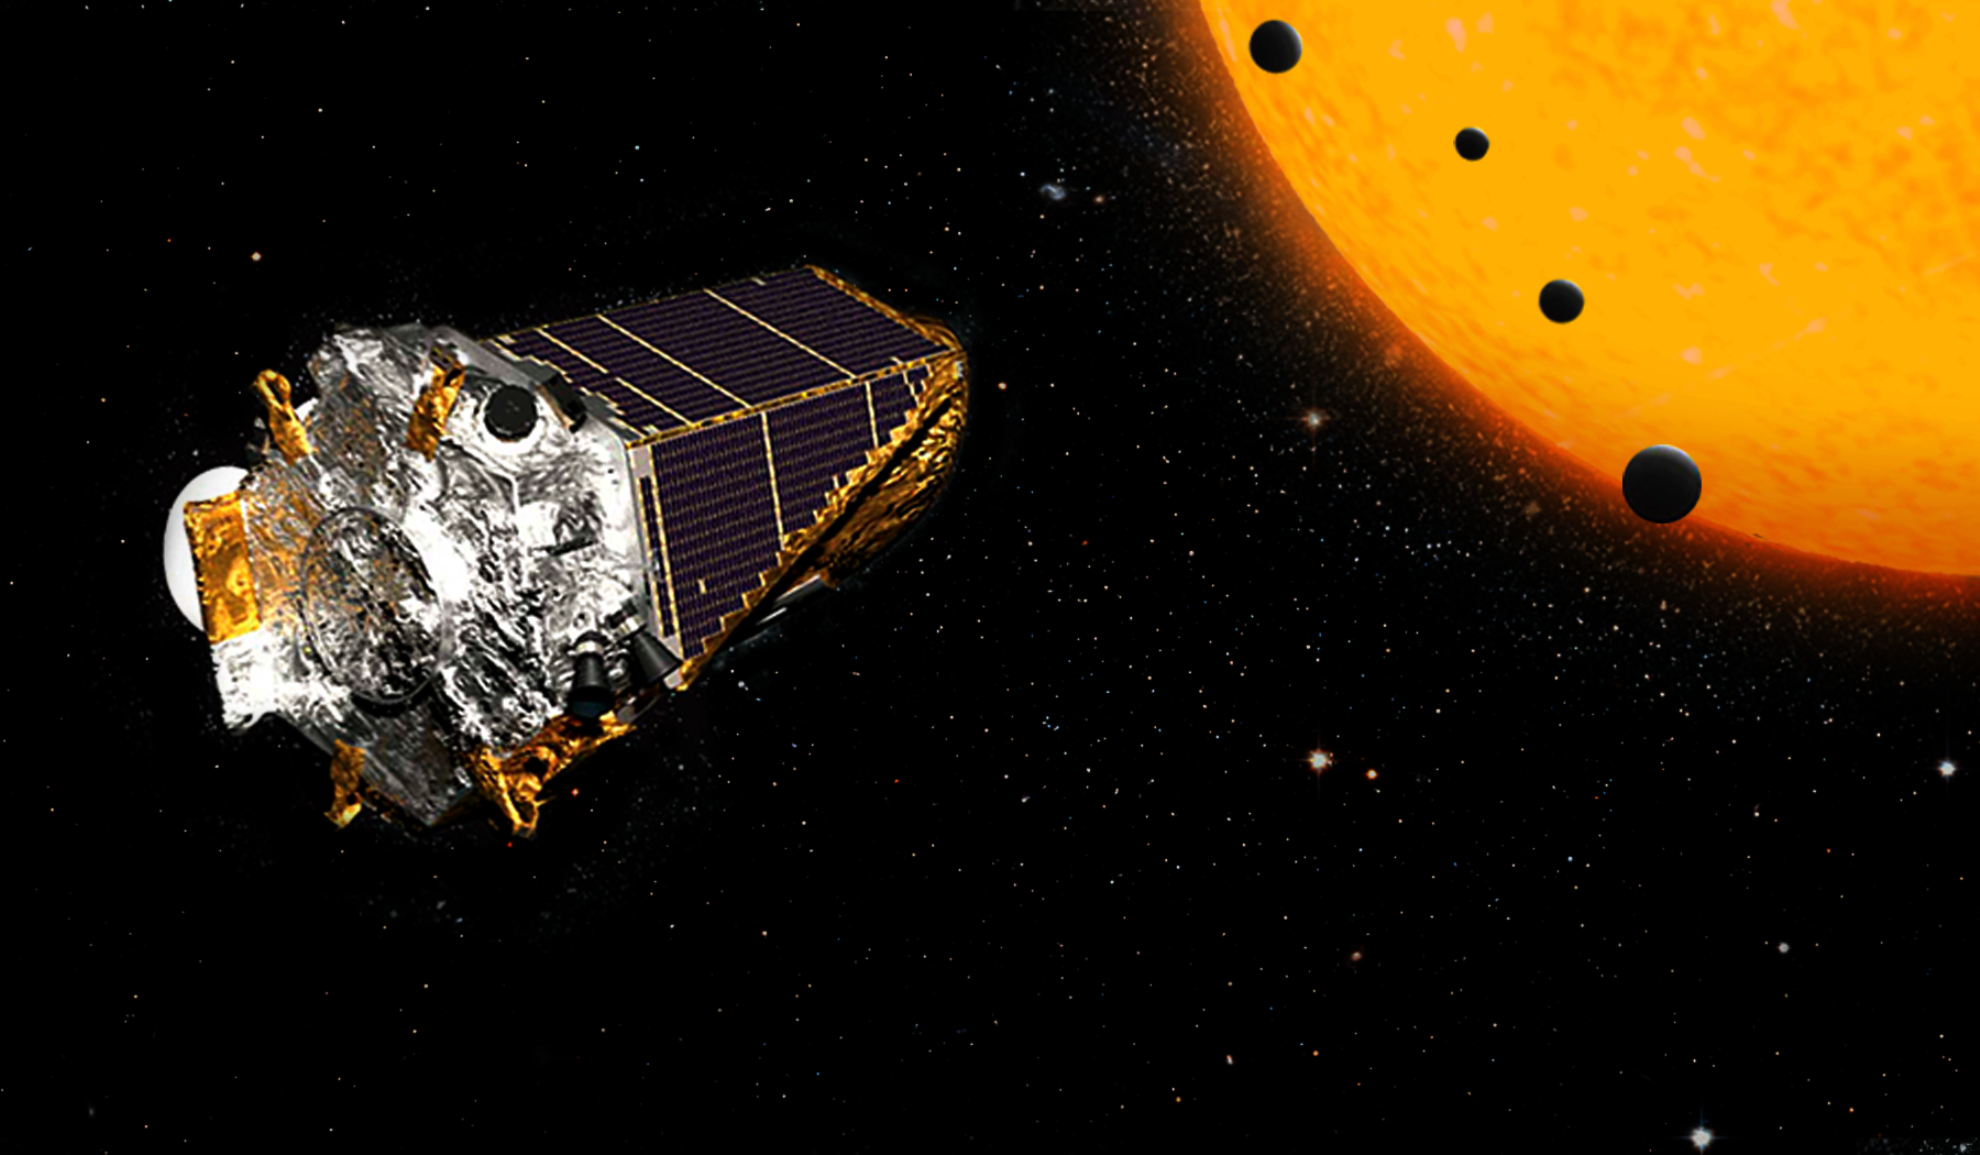 Une vue d'artiste d'exoplanètes en transit devant une étoile, observées par Kepler. © Nasa